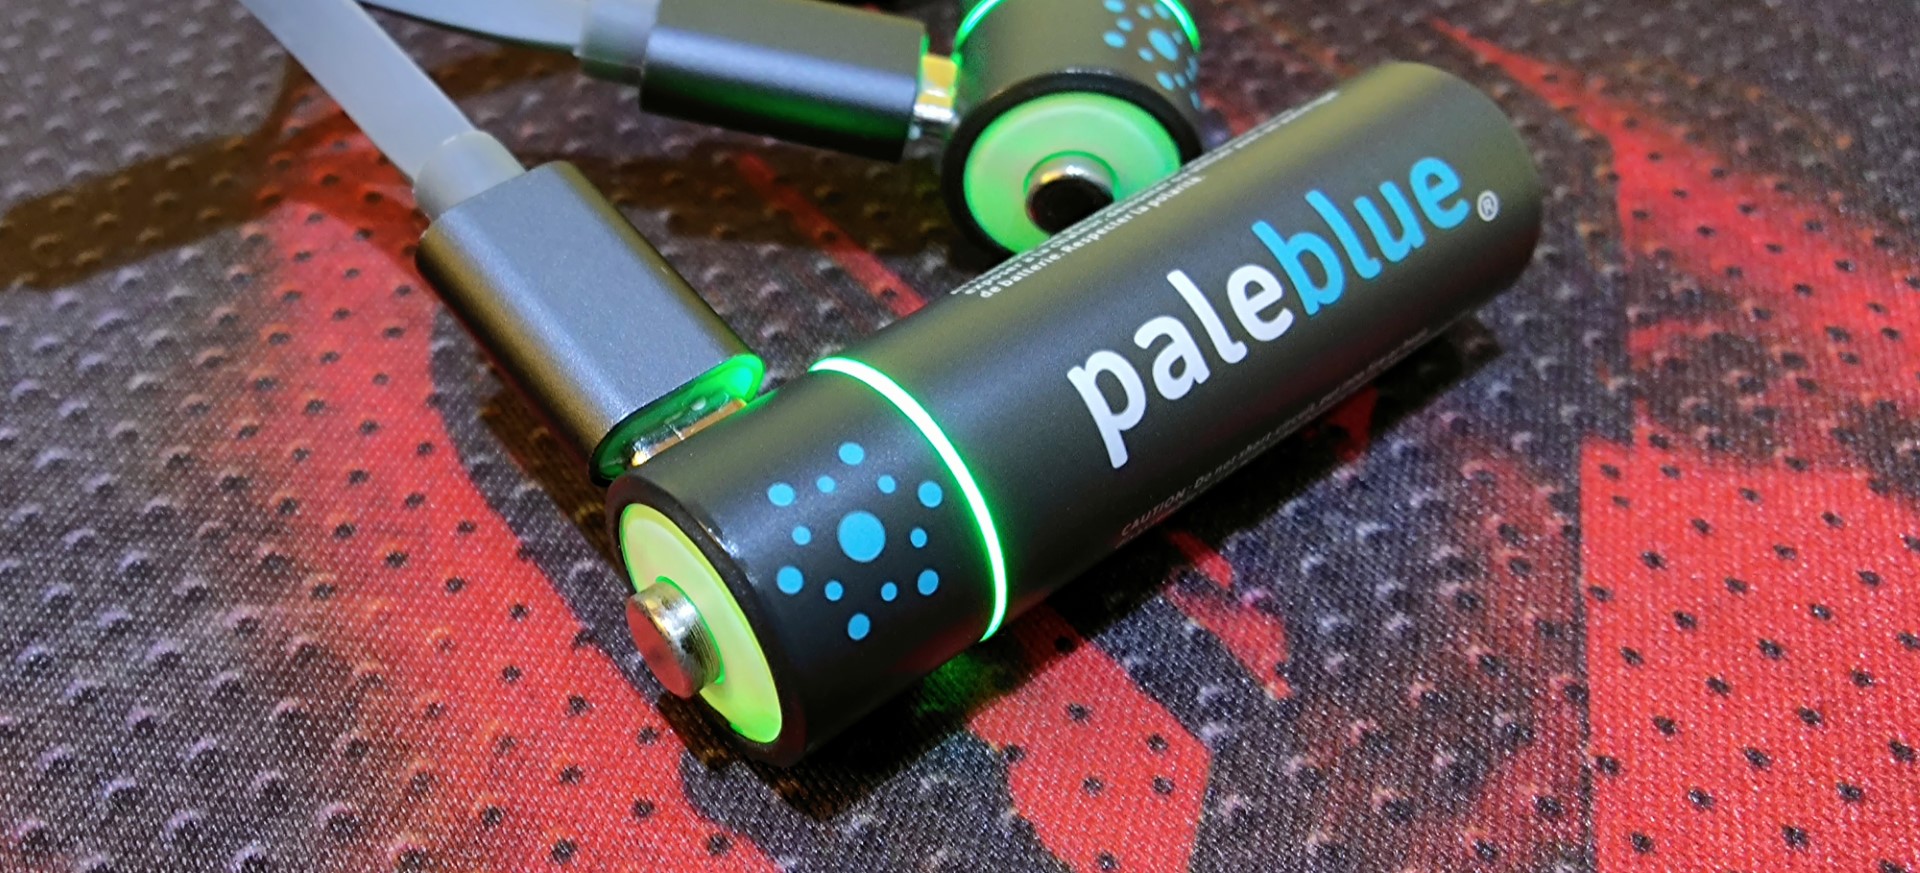 J'ai testé les piles rechargeables par USB de la marque Pale Blue. –  DoubleGeek